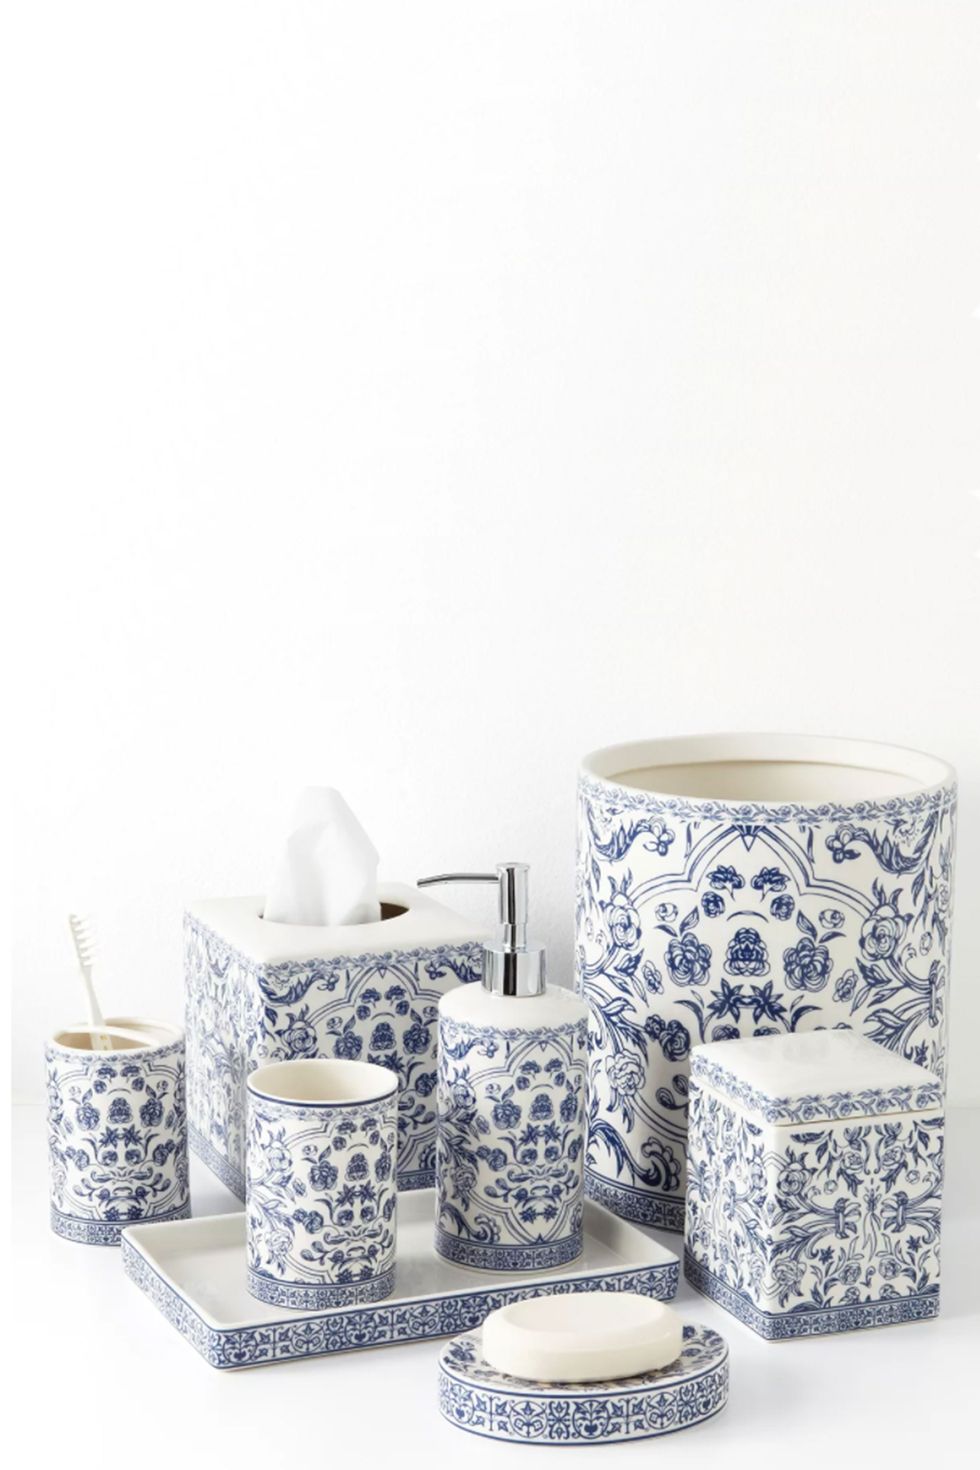 Orsay Blue Toile Porcelain Bath Accessories